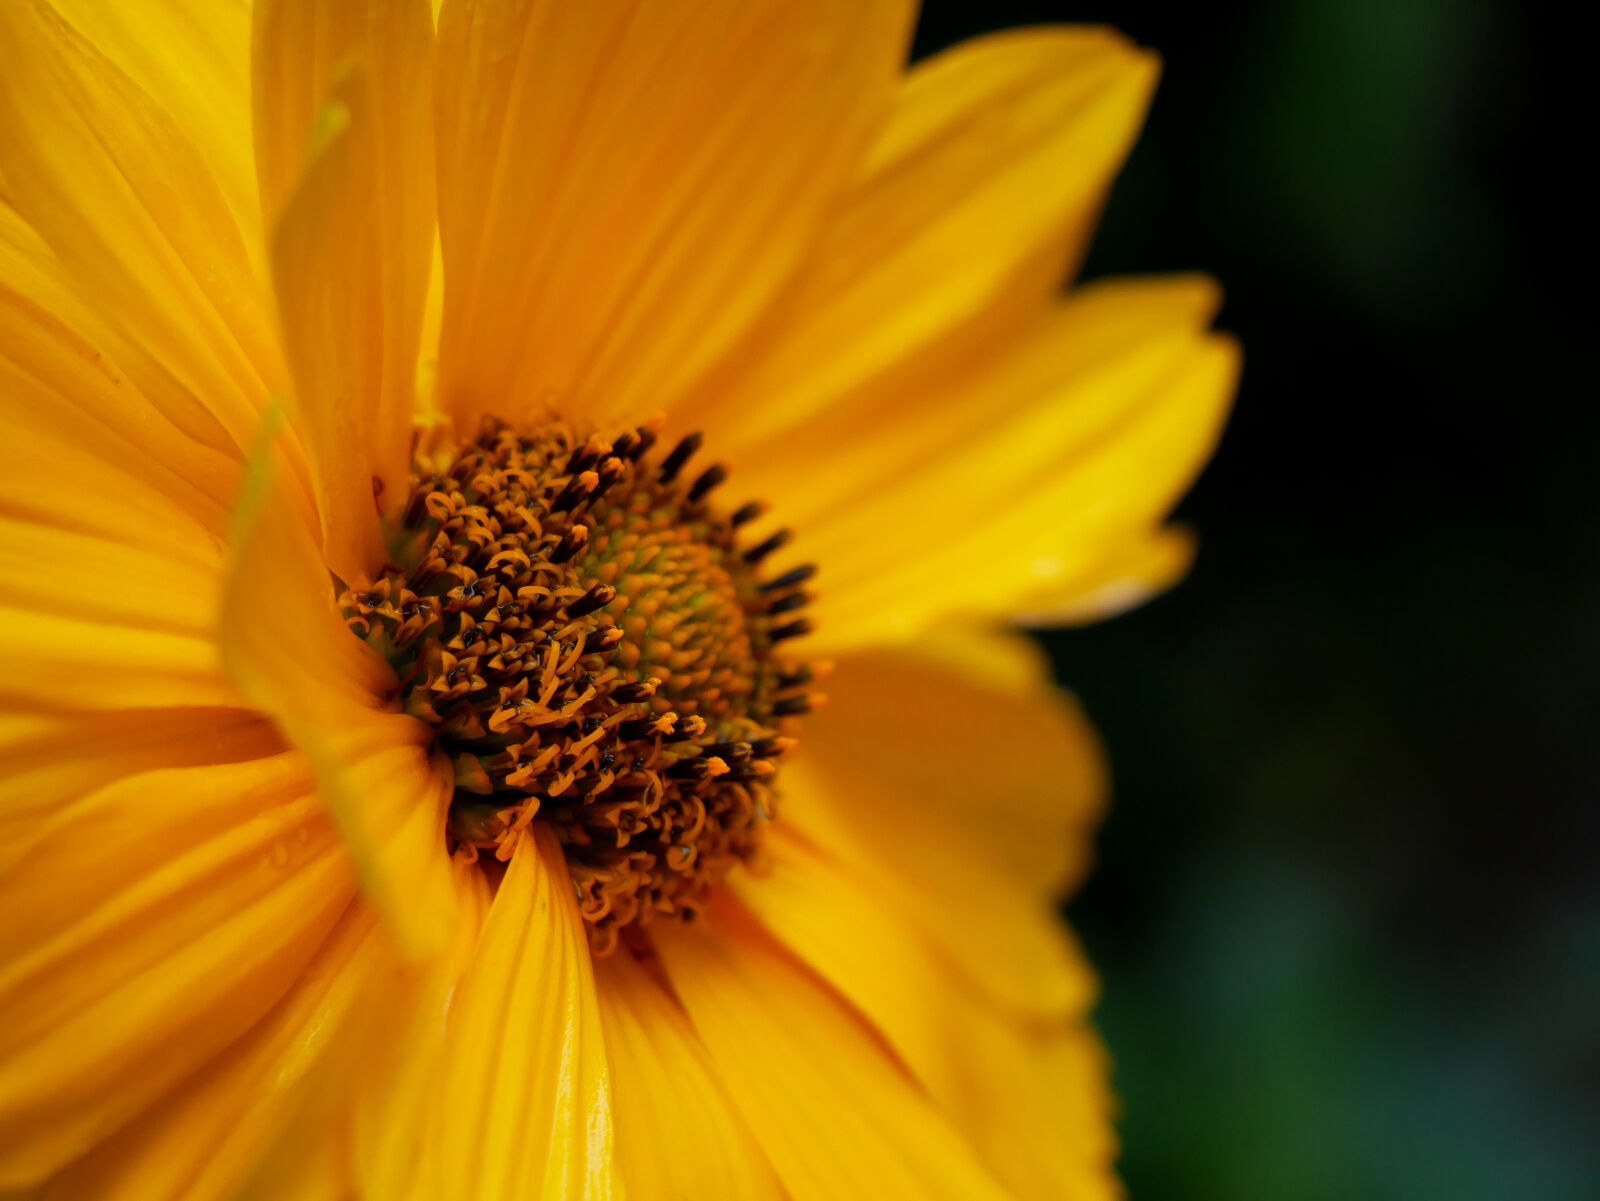 Panasonic DMC-G81 sample photo. Flower, nature, yellow photography